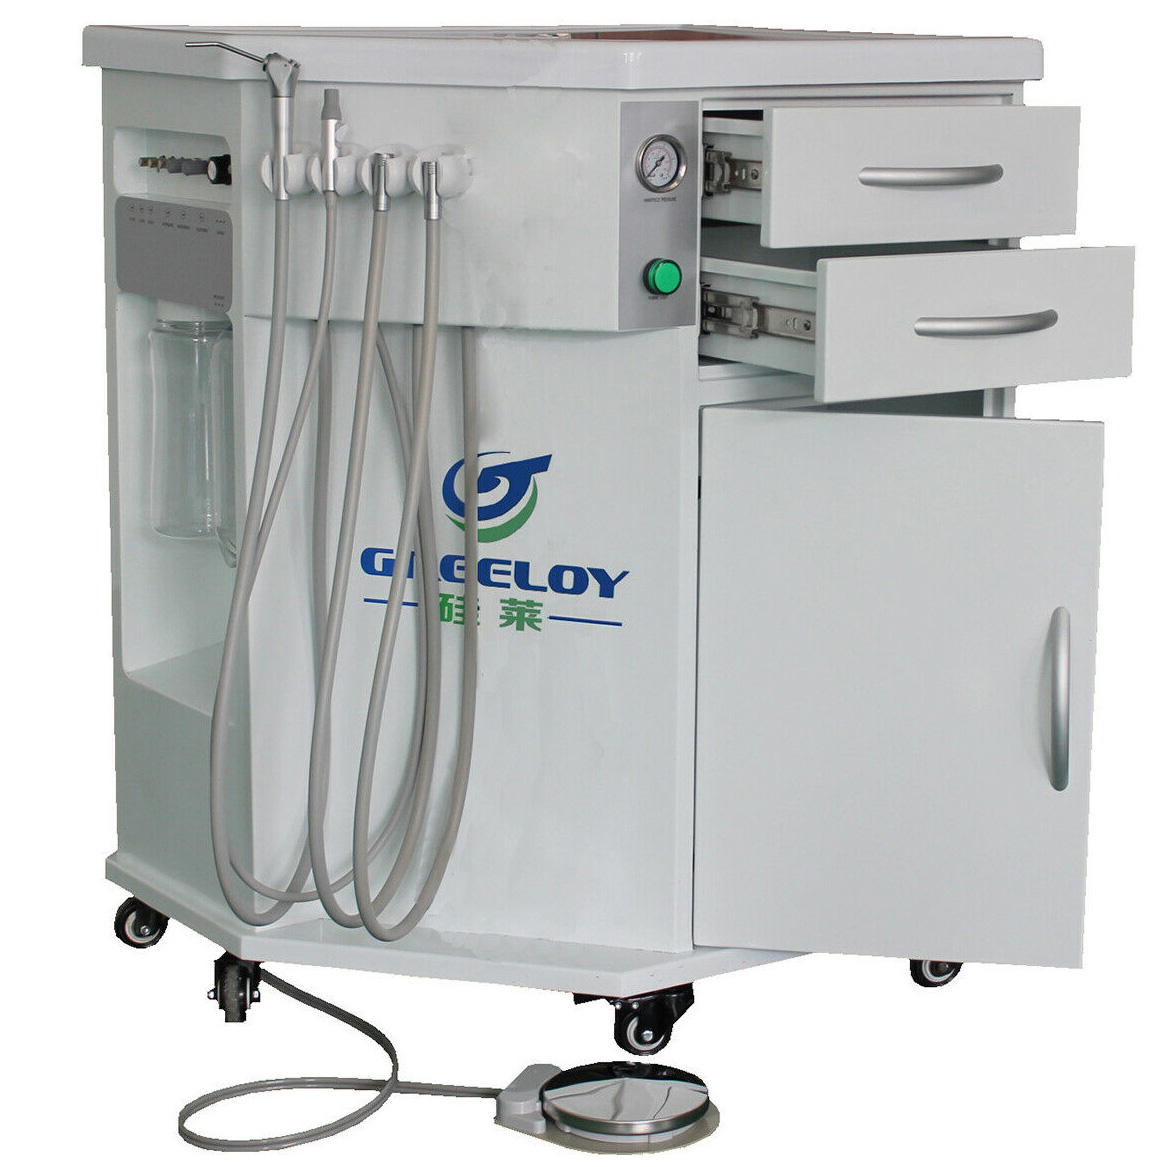 Greeloy® P211 unité de soin dentaire avec chariot tiroir et compressore senza olio